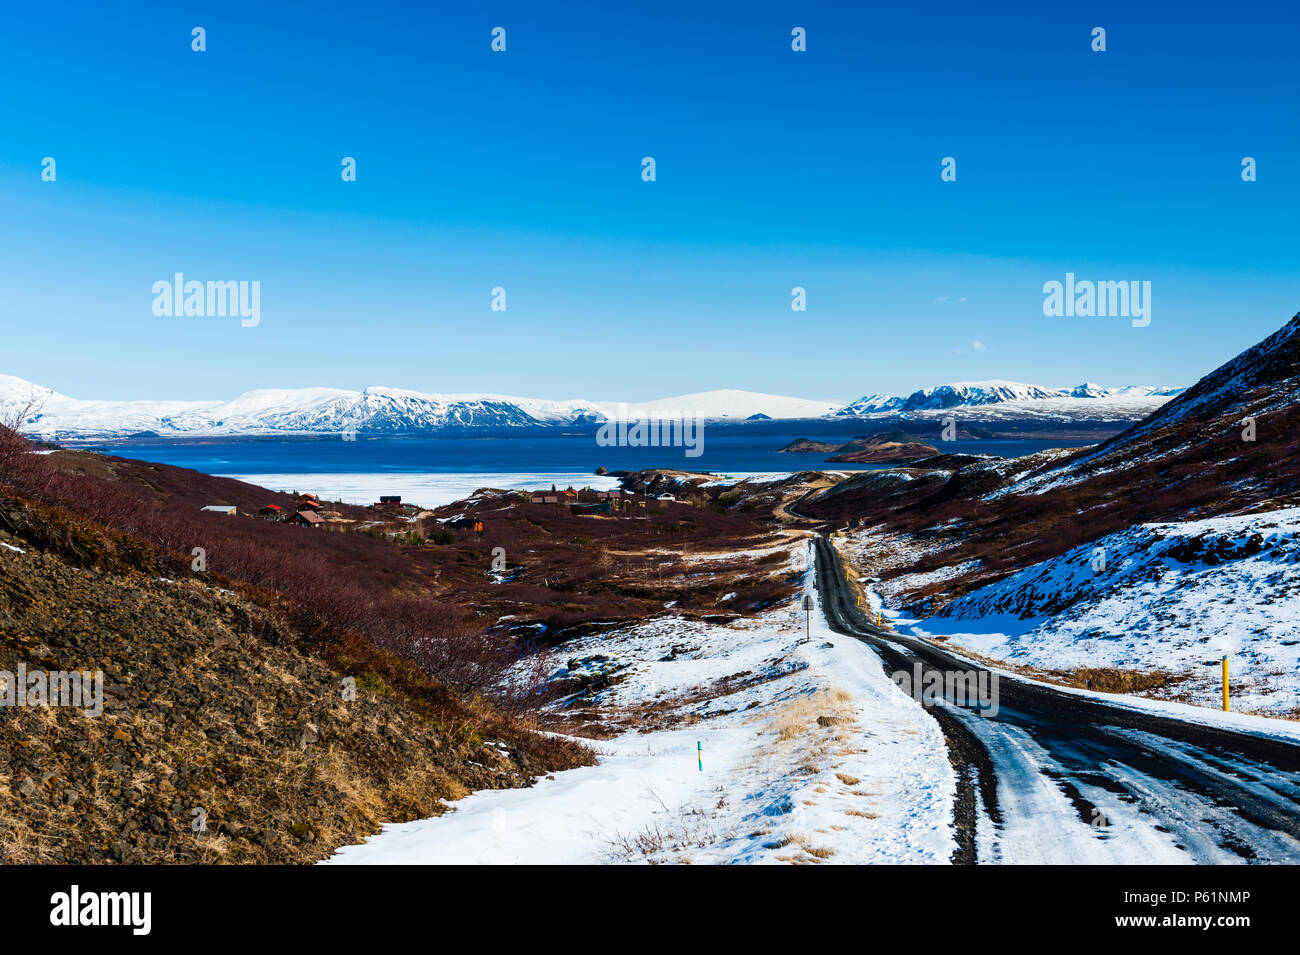 In parte coperta di neve strade di ghiaia conduce alla riva del lago thingvallavatn a Thingvellir national park, catturato in buone condizioni meteorologiche, Islanda aprile 2018 Foto Stock